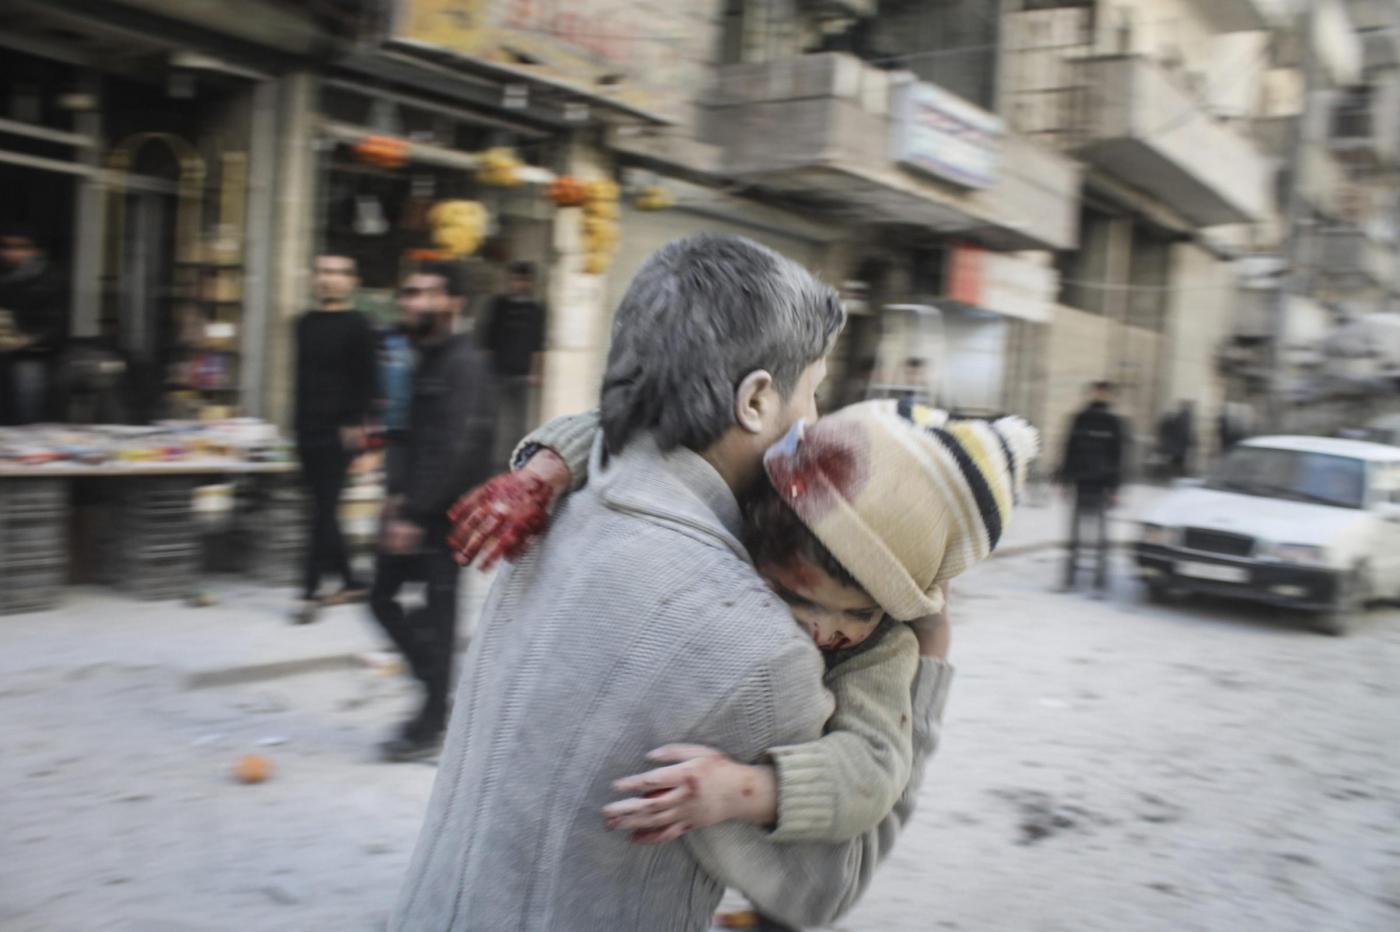 Le piu' belle foto del 2014 dell'agenzia Anadolu